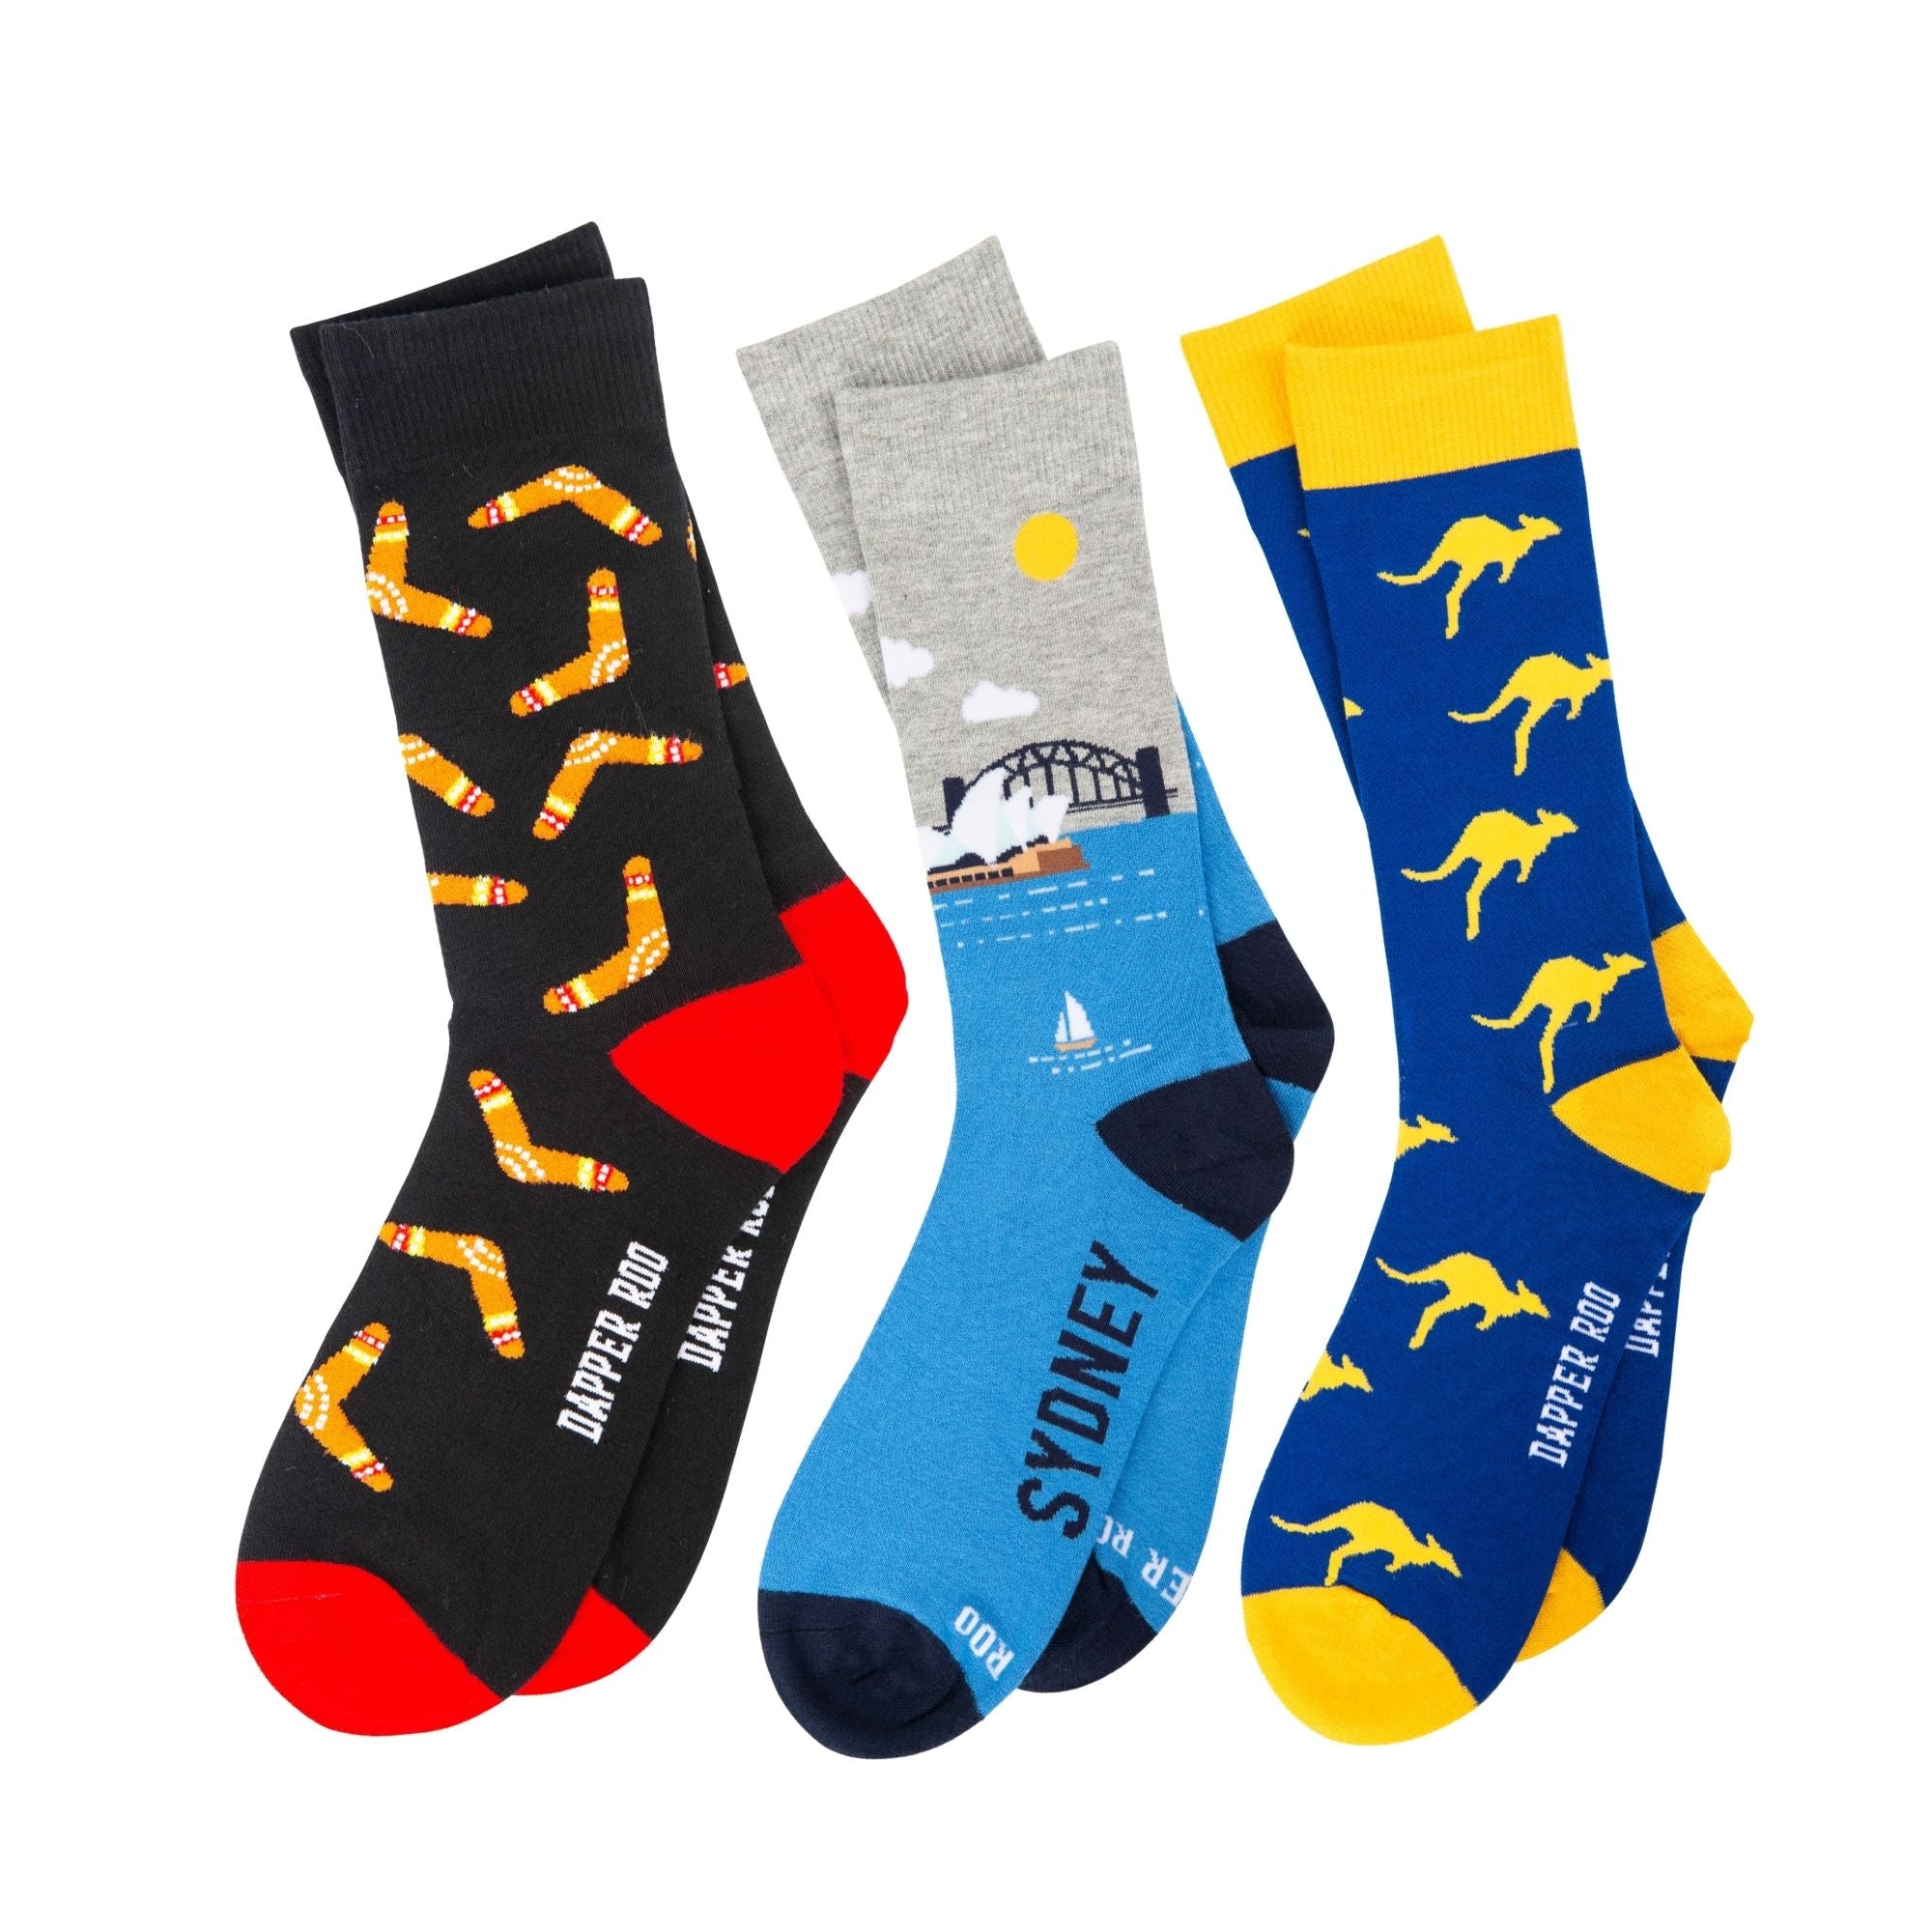 Aussie Socks Gift Set Dapper Roo, Socks Gift Set, Gift Set, Dapper Roo, Aussie Socks, SS5006, Location: SK2021+SK2005+SK2016, Clinks.com